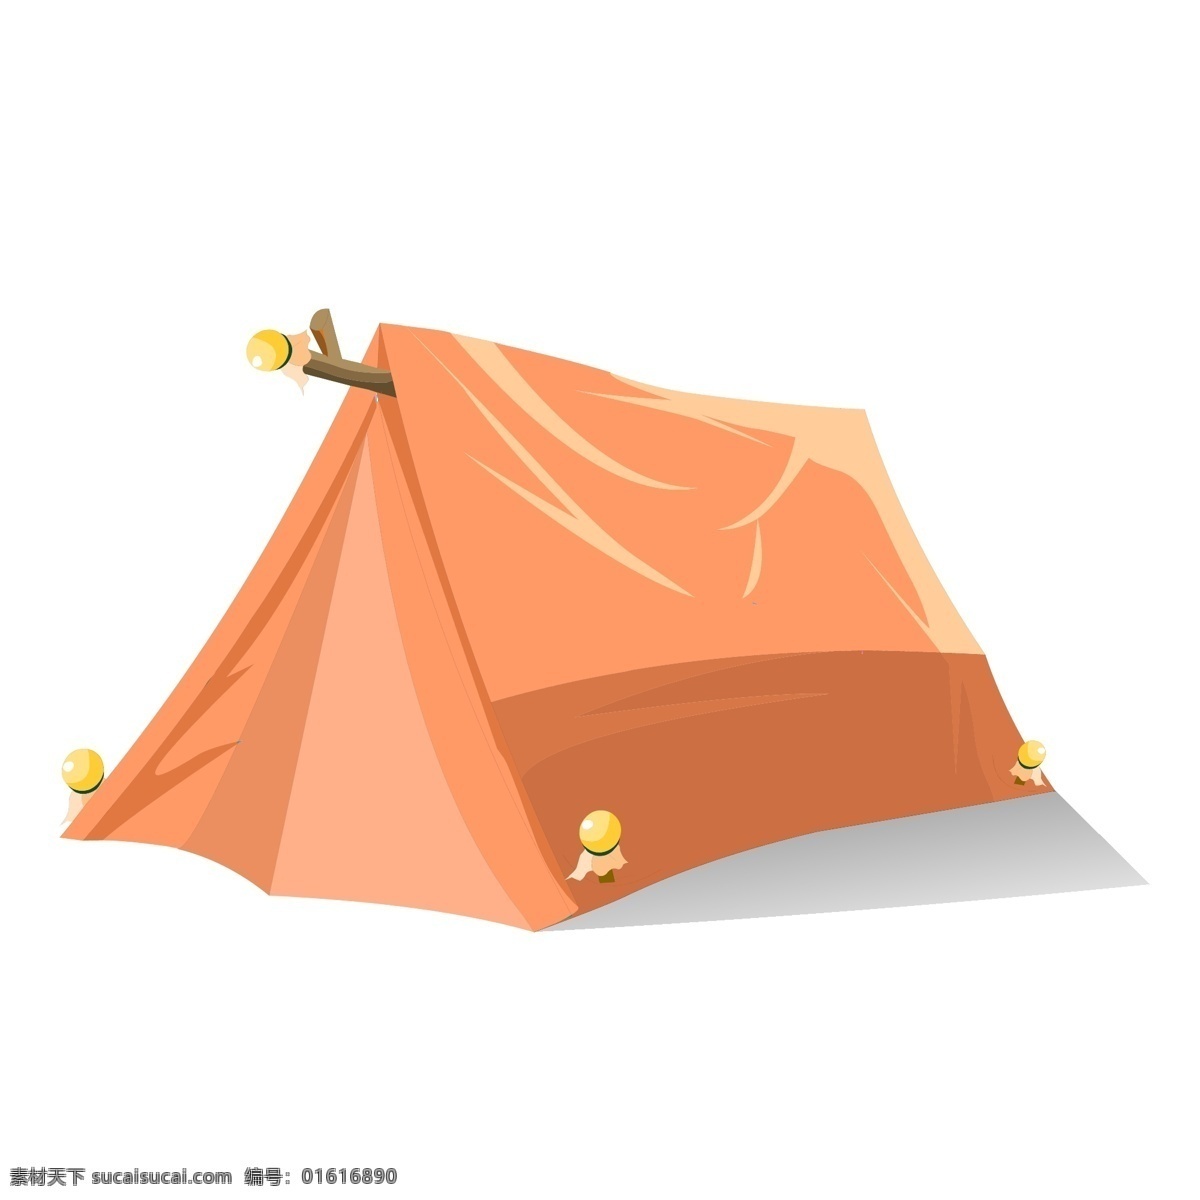 春游 野营 卡通 帐篷 营地 卡通手绘 矢量装饰 手绘帐篷 橘色 矢量帐篷 矢量图形